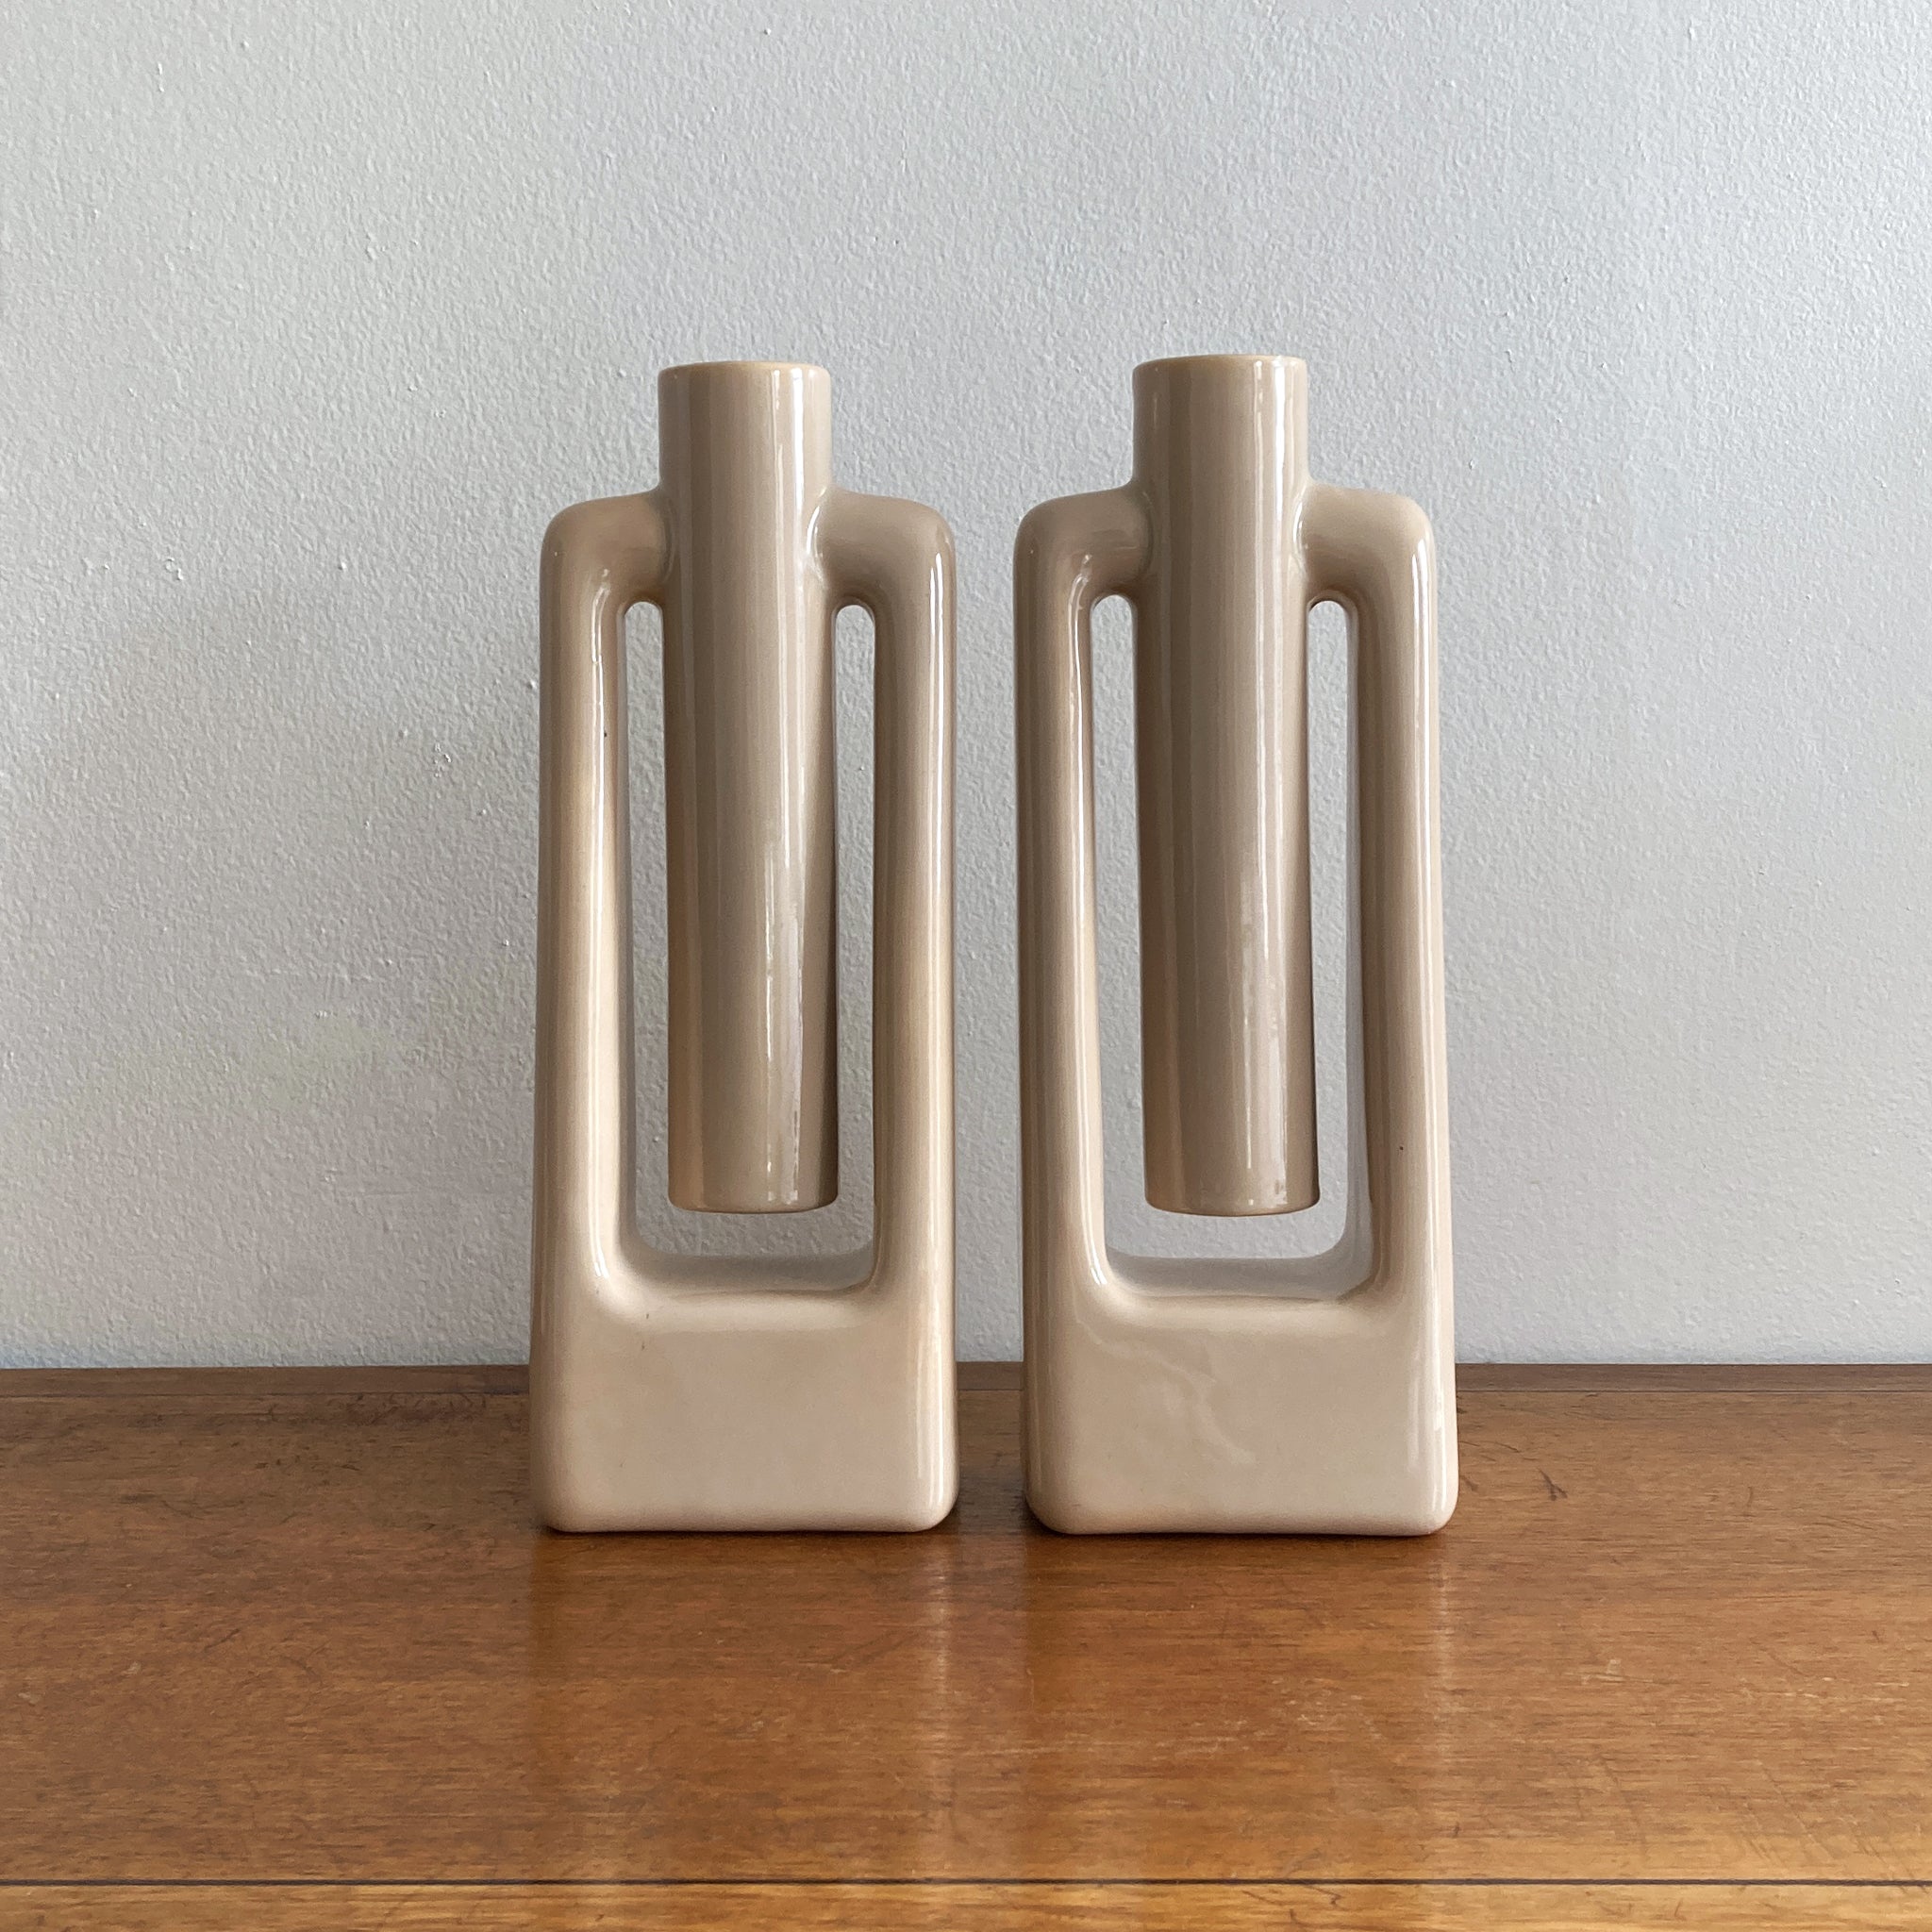 Une étonnante et rare paire de vases abstraits de style milieu de siècle Haeger beige/écru, de taille moyenne. En très bon état, sans craquelures ni fissures. Cette paire est coordonnée avec trois autres vases assortis, listés séparément, voir